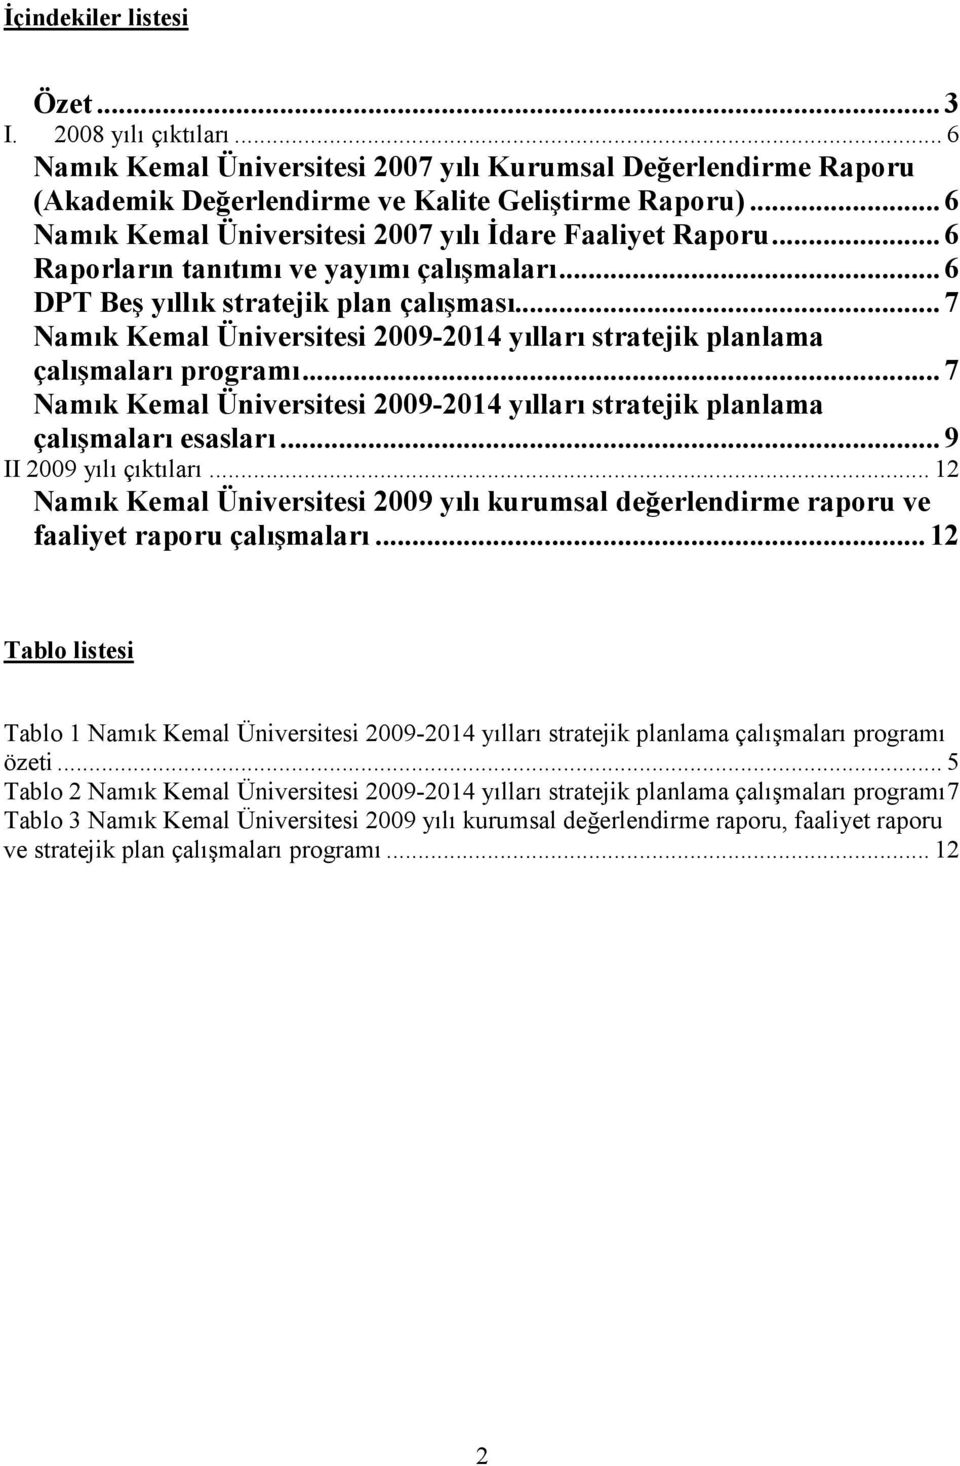 .. 7 Namık Kemal Üniversitesi -2014 yılları stratejik planlama çalışmaları programı... 7 Namık Kemal Üniversitesi -2014 yılları stratejik planlama çalışmaları esasları... 9 II yılı çıktıları.